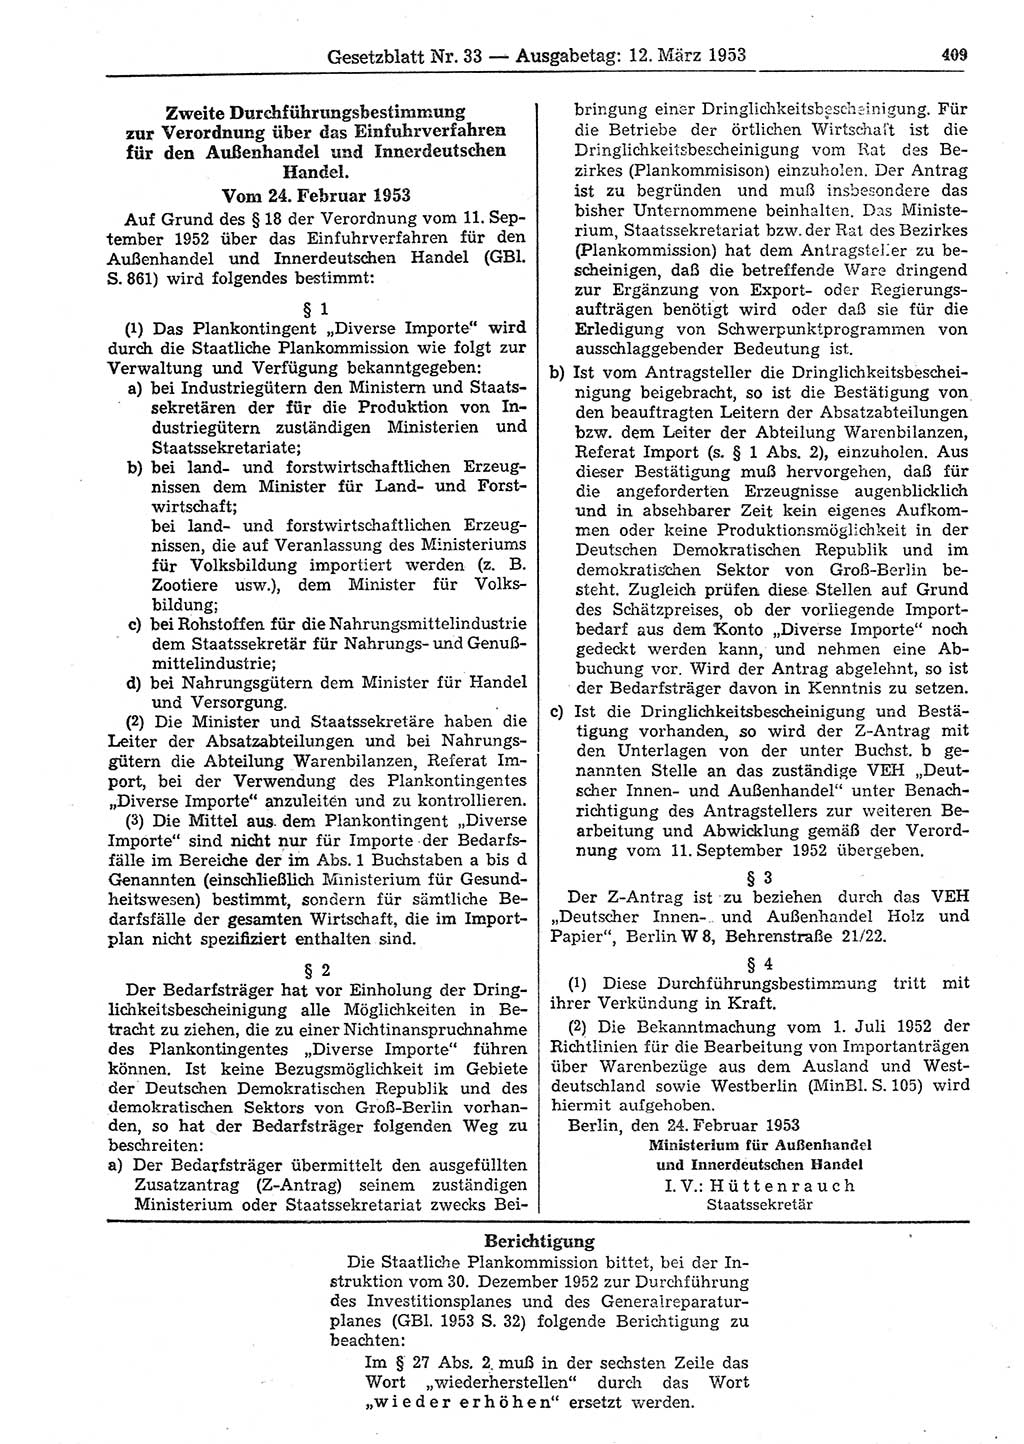 Gesetzblatt (GBl.) der Deutschen Demokratischen Republik (DDR) 1953, Seite 409 (GBl. DDR 1953, S. 409)